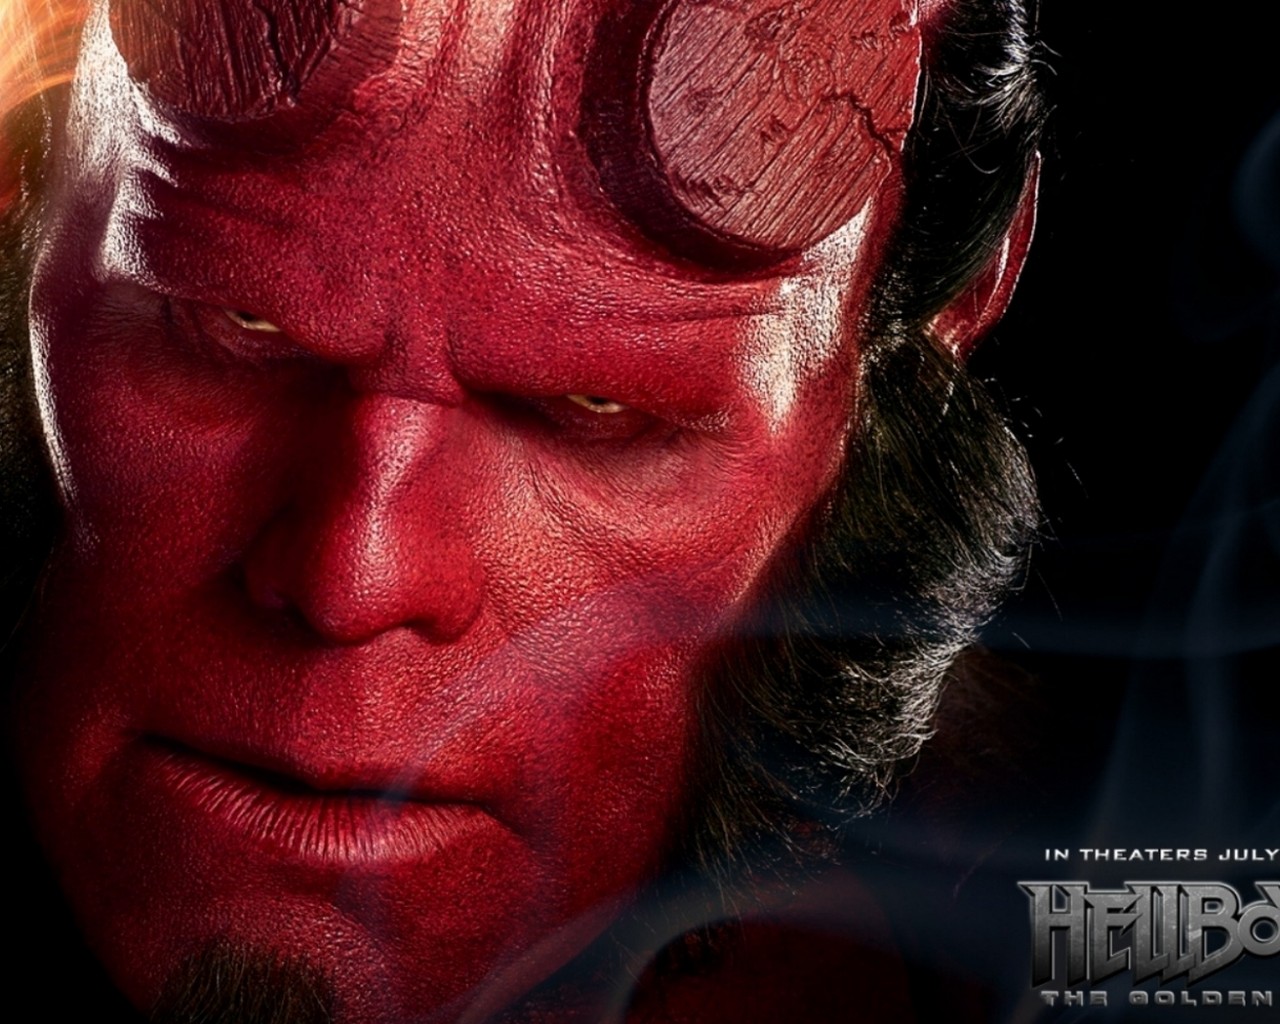 Hellboy 2